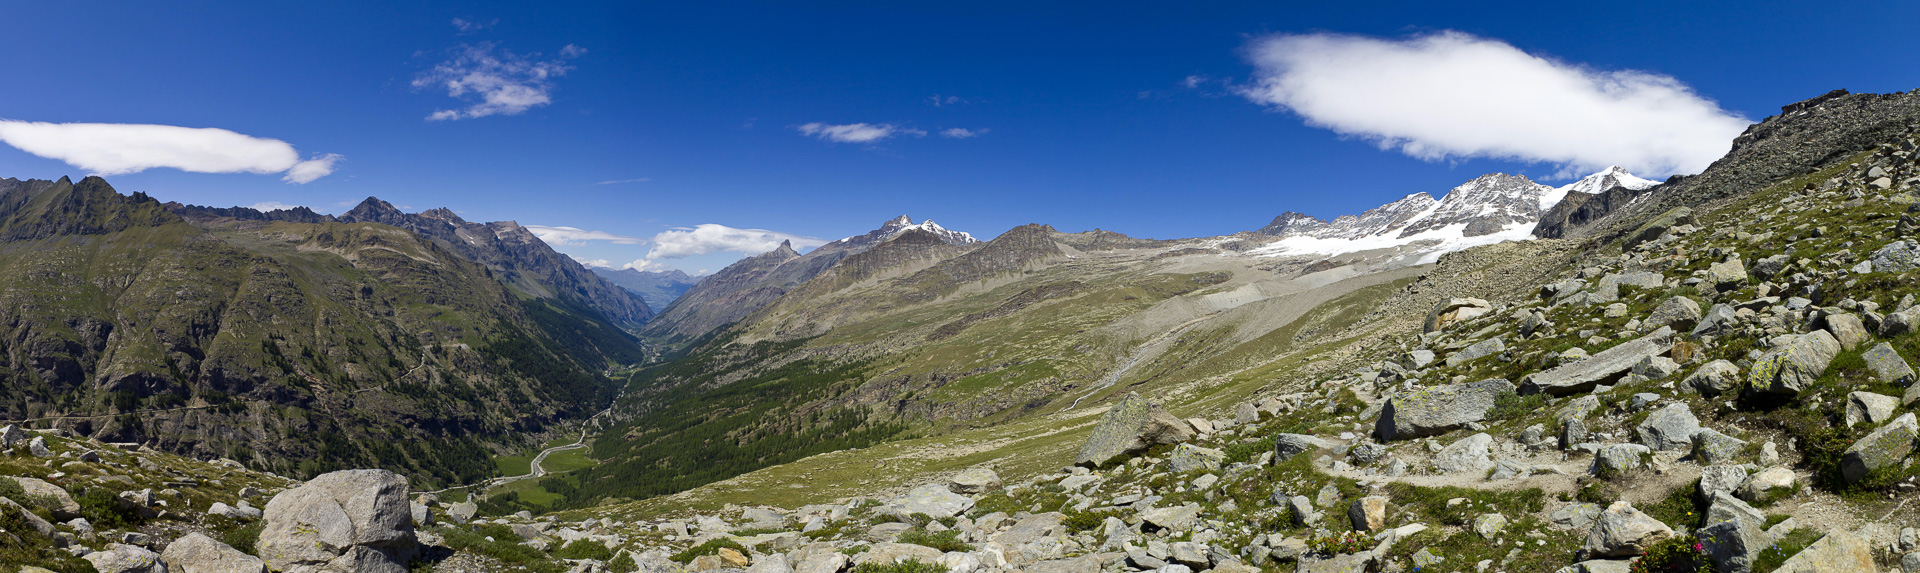 Der Blick weitet sich über das Valsavarenche zur Grivola und zu den zentralen Bergen der Paradiso-Gruppe.